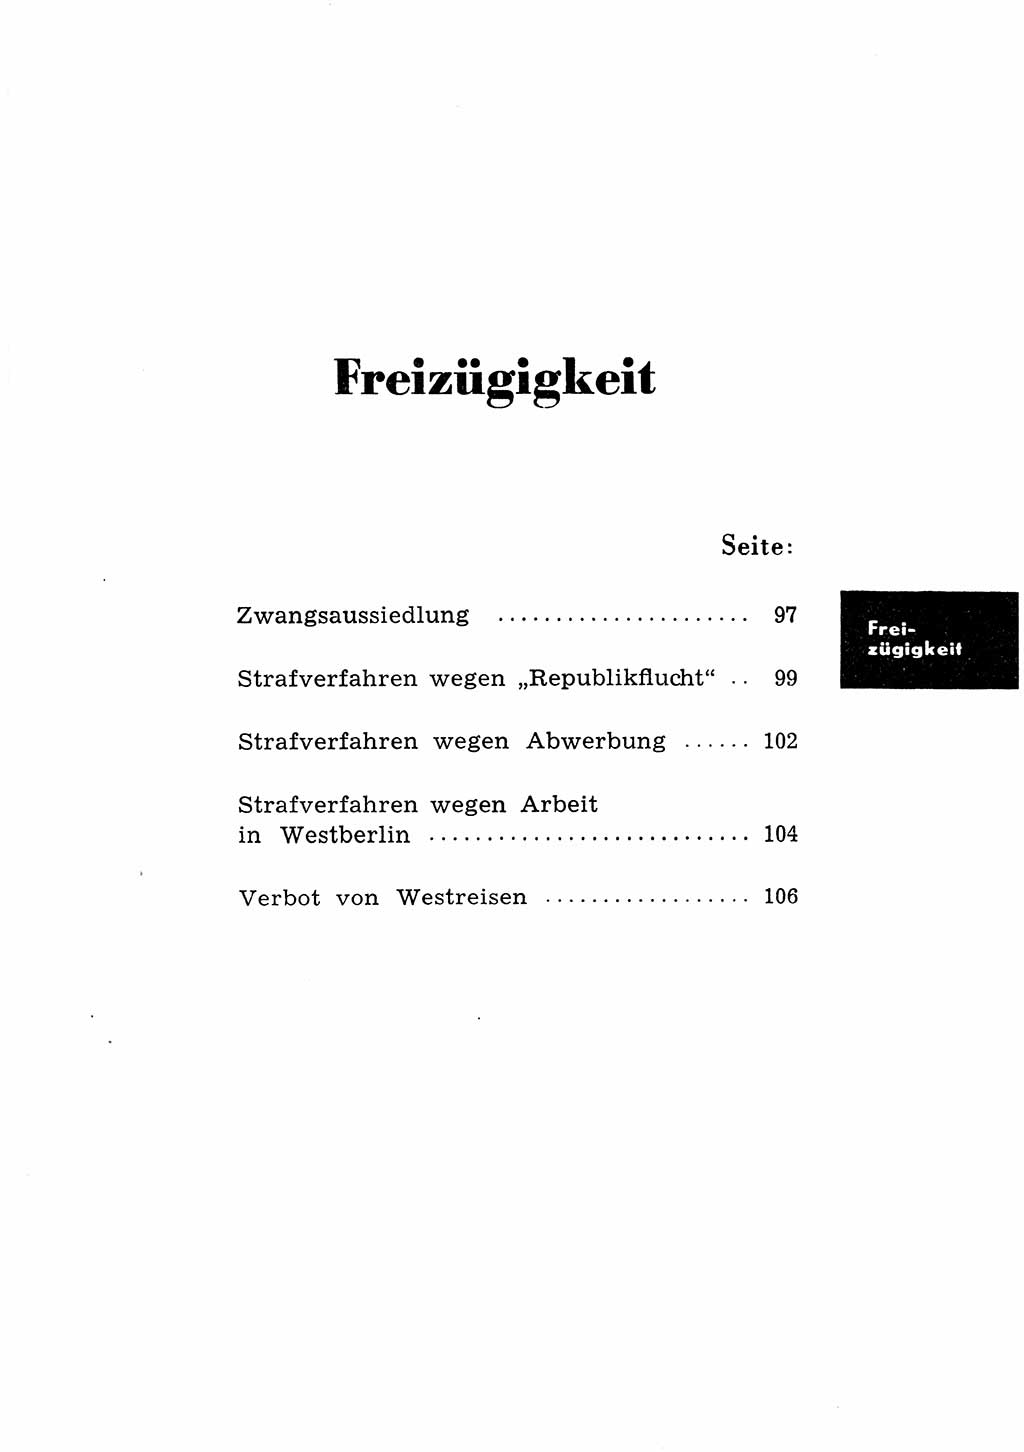 Katalog des Unrechts, Untersuchungsausschuß Freiheitlicher Juristen (UfJ) [Bundesrepublik Deutschland (BRD)] 1956, Seite 95 (Kat. UnR. UfJ BRD 1956, S. 95)